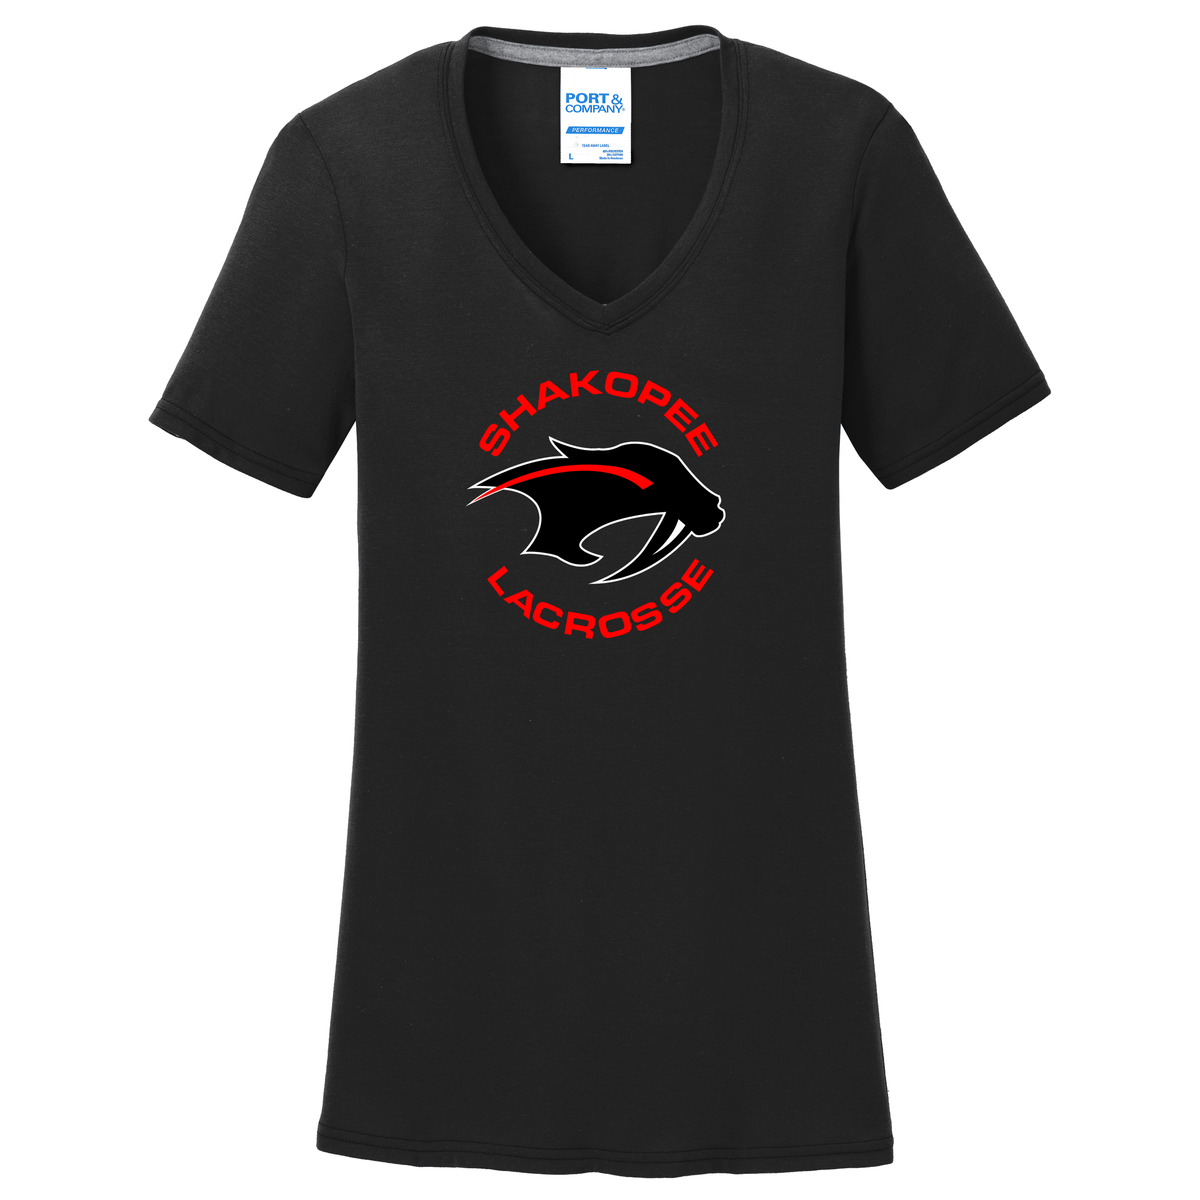 Shakopee Lacrosse Women's Black T-Shirt